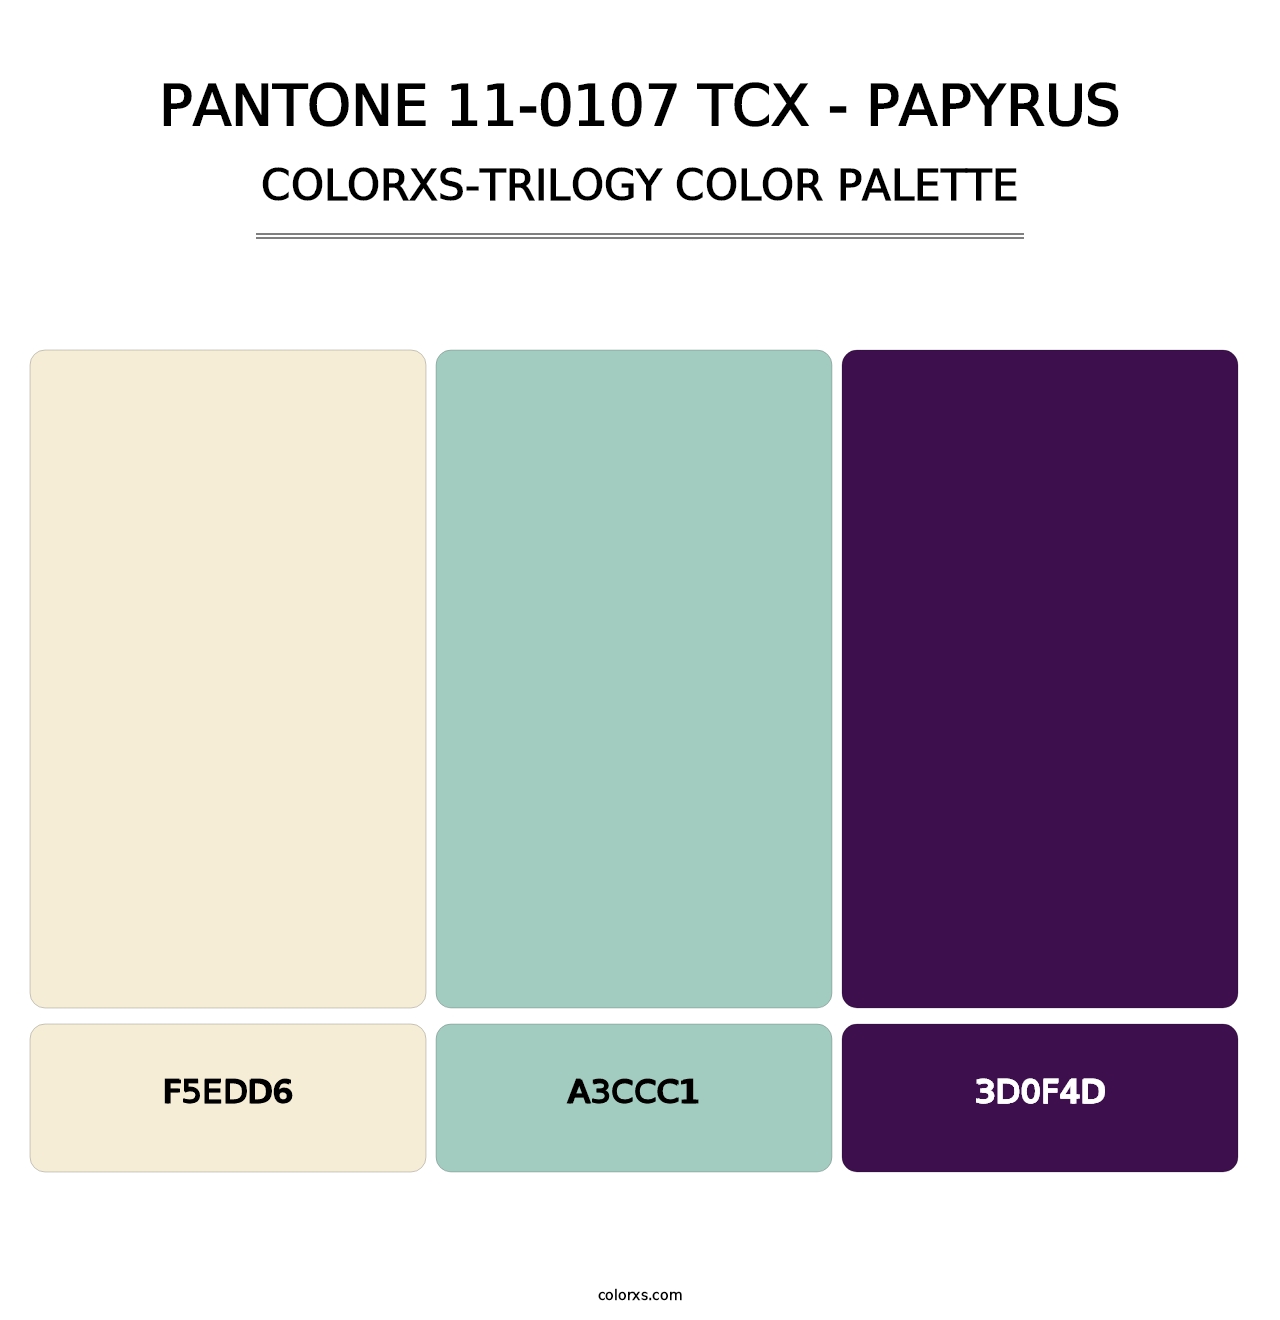 PANTONE 11-0107 TCX - Papyrus - Colorxs Trilogy Palette